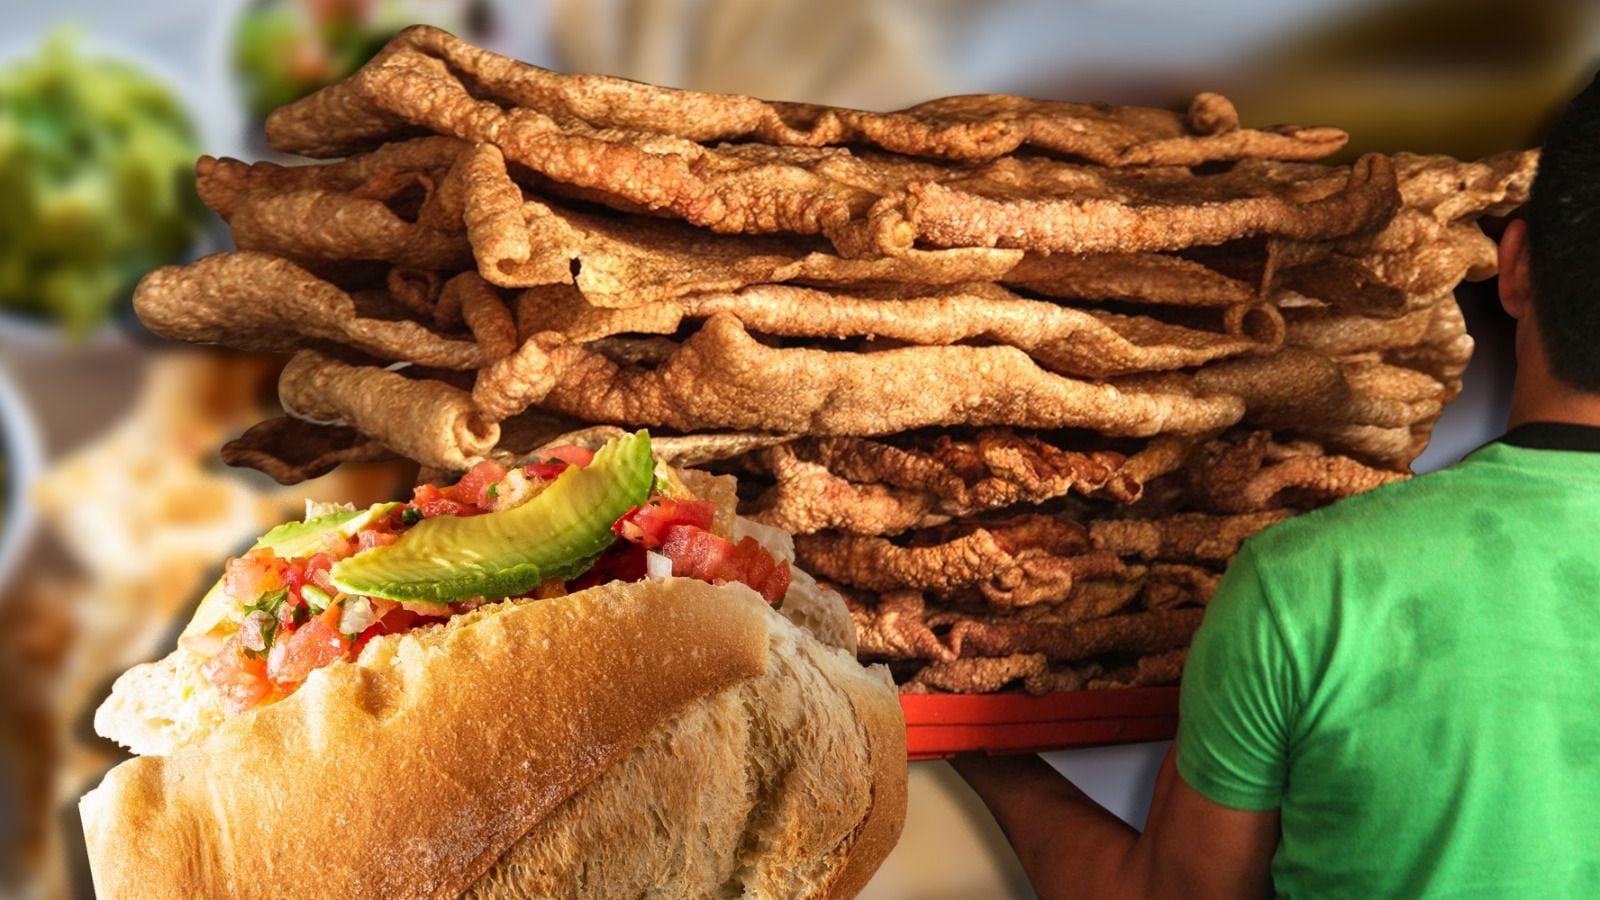 El chicharrón de cerdo es popular en 'guacamayas' y tacos placeros. (Fotoarte: Andrea López Trejo | El Financiero).